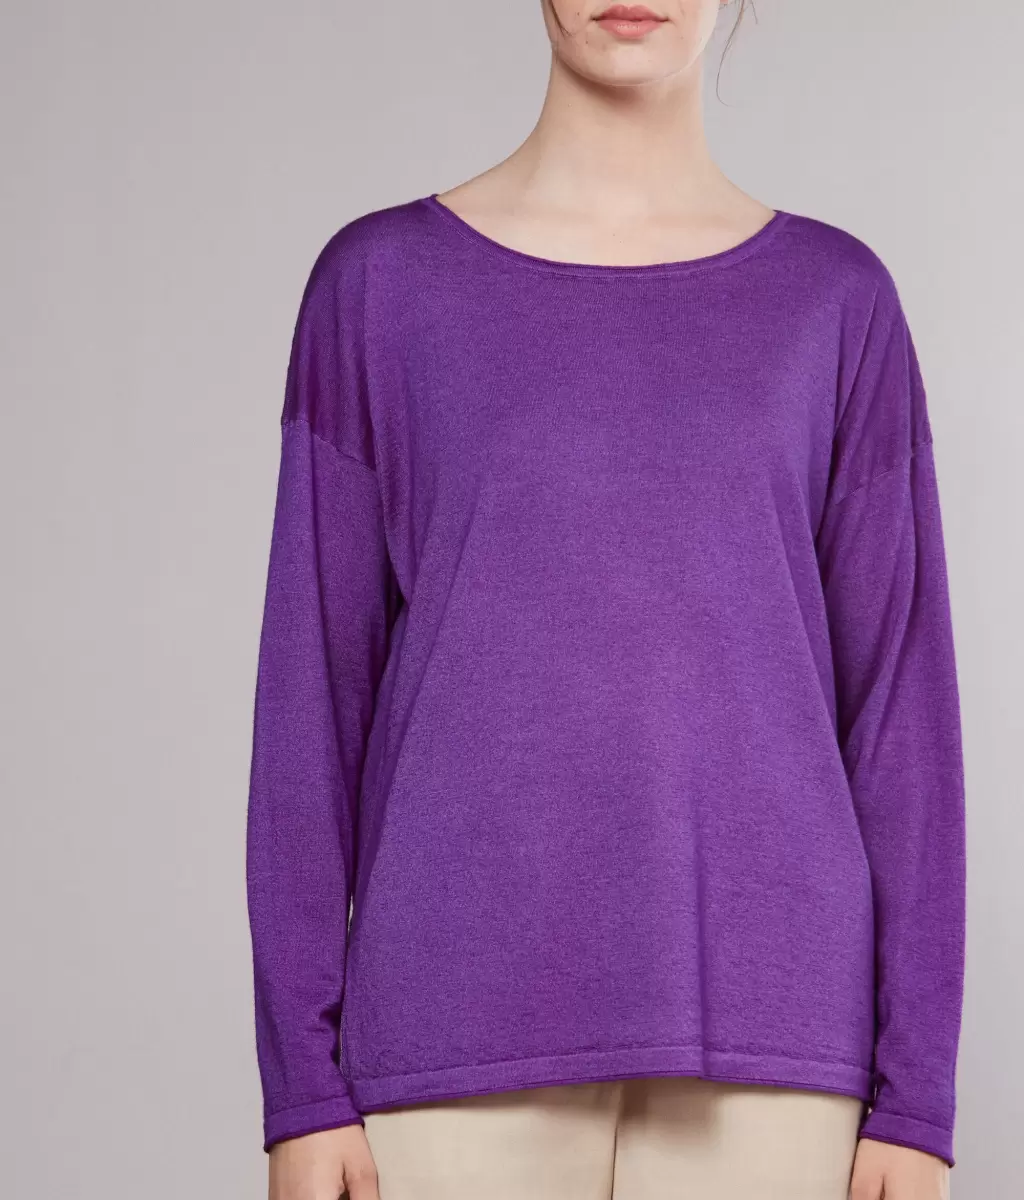 Falconeri Violet Swetry Z Okrągłym Dekoltem Kobieta Bluzka Z Dekoltem W Łódkę Z Kaszmiru Ultrafine - 1